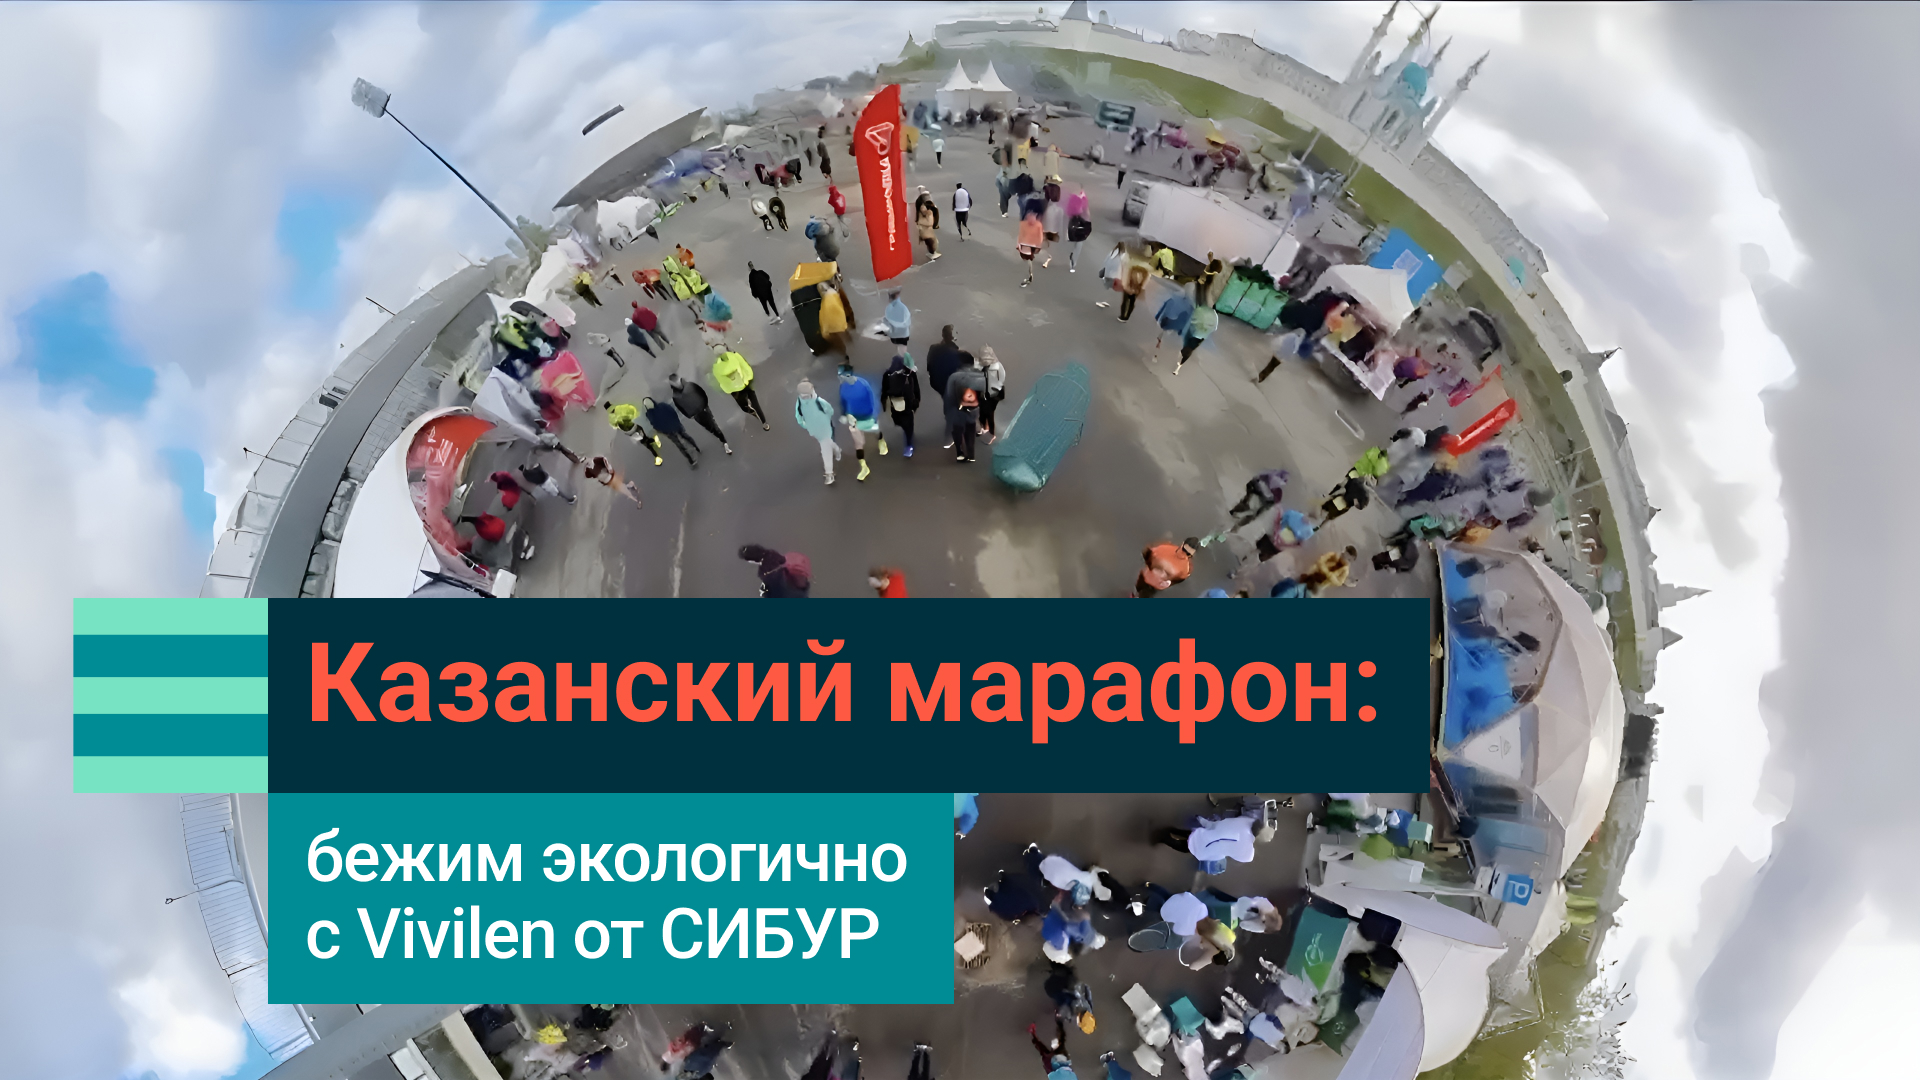 Бегать экологично: как СИБУР поддержал Десятый Казанский марафон